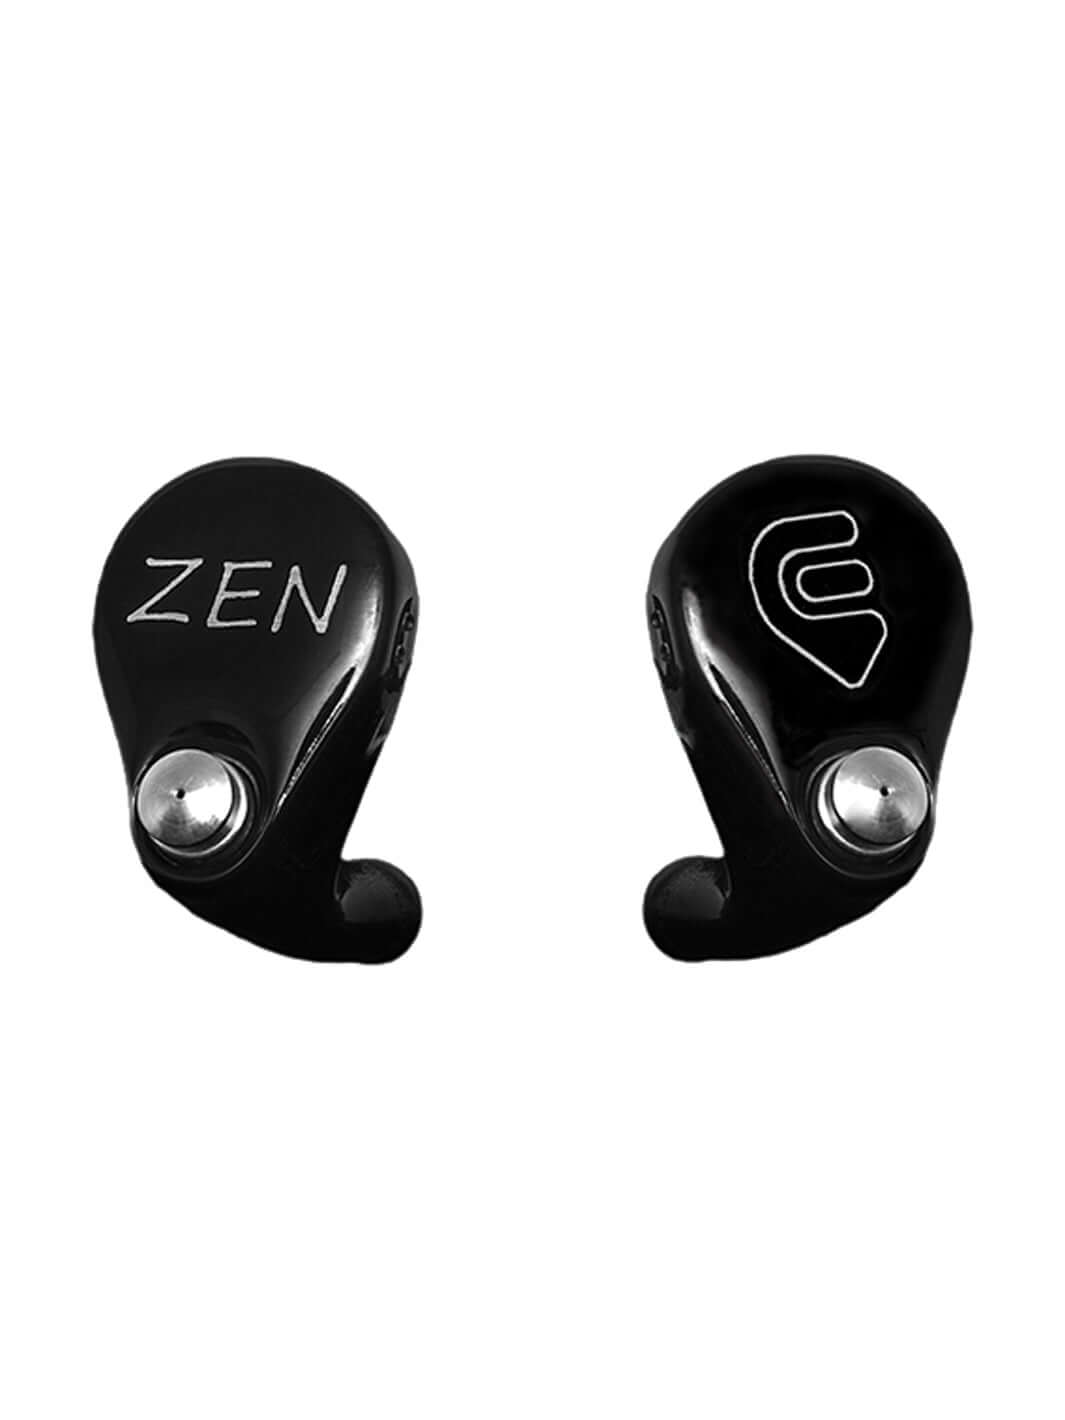 Zen 2 | InEarz Audio